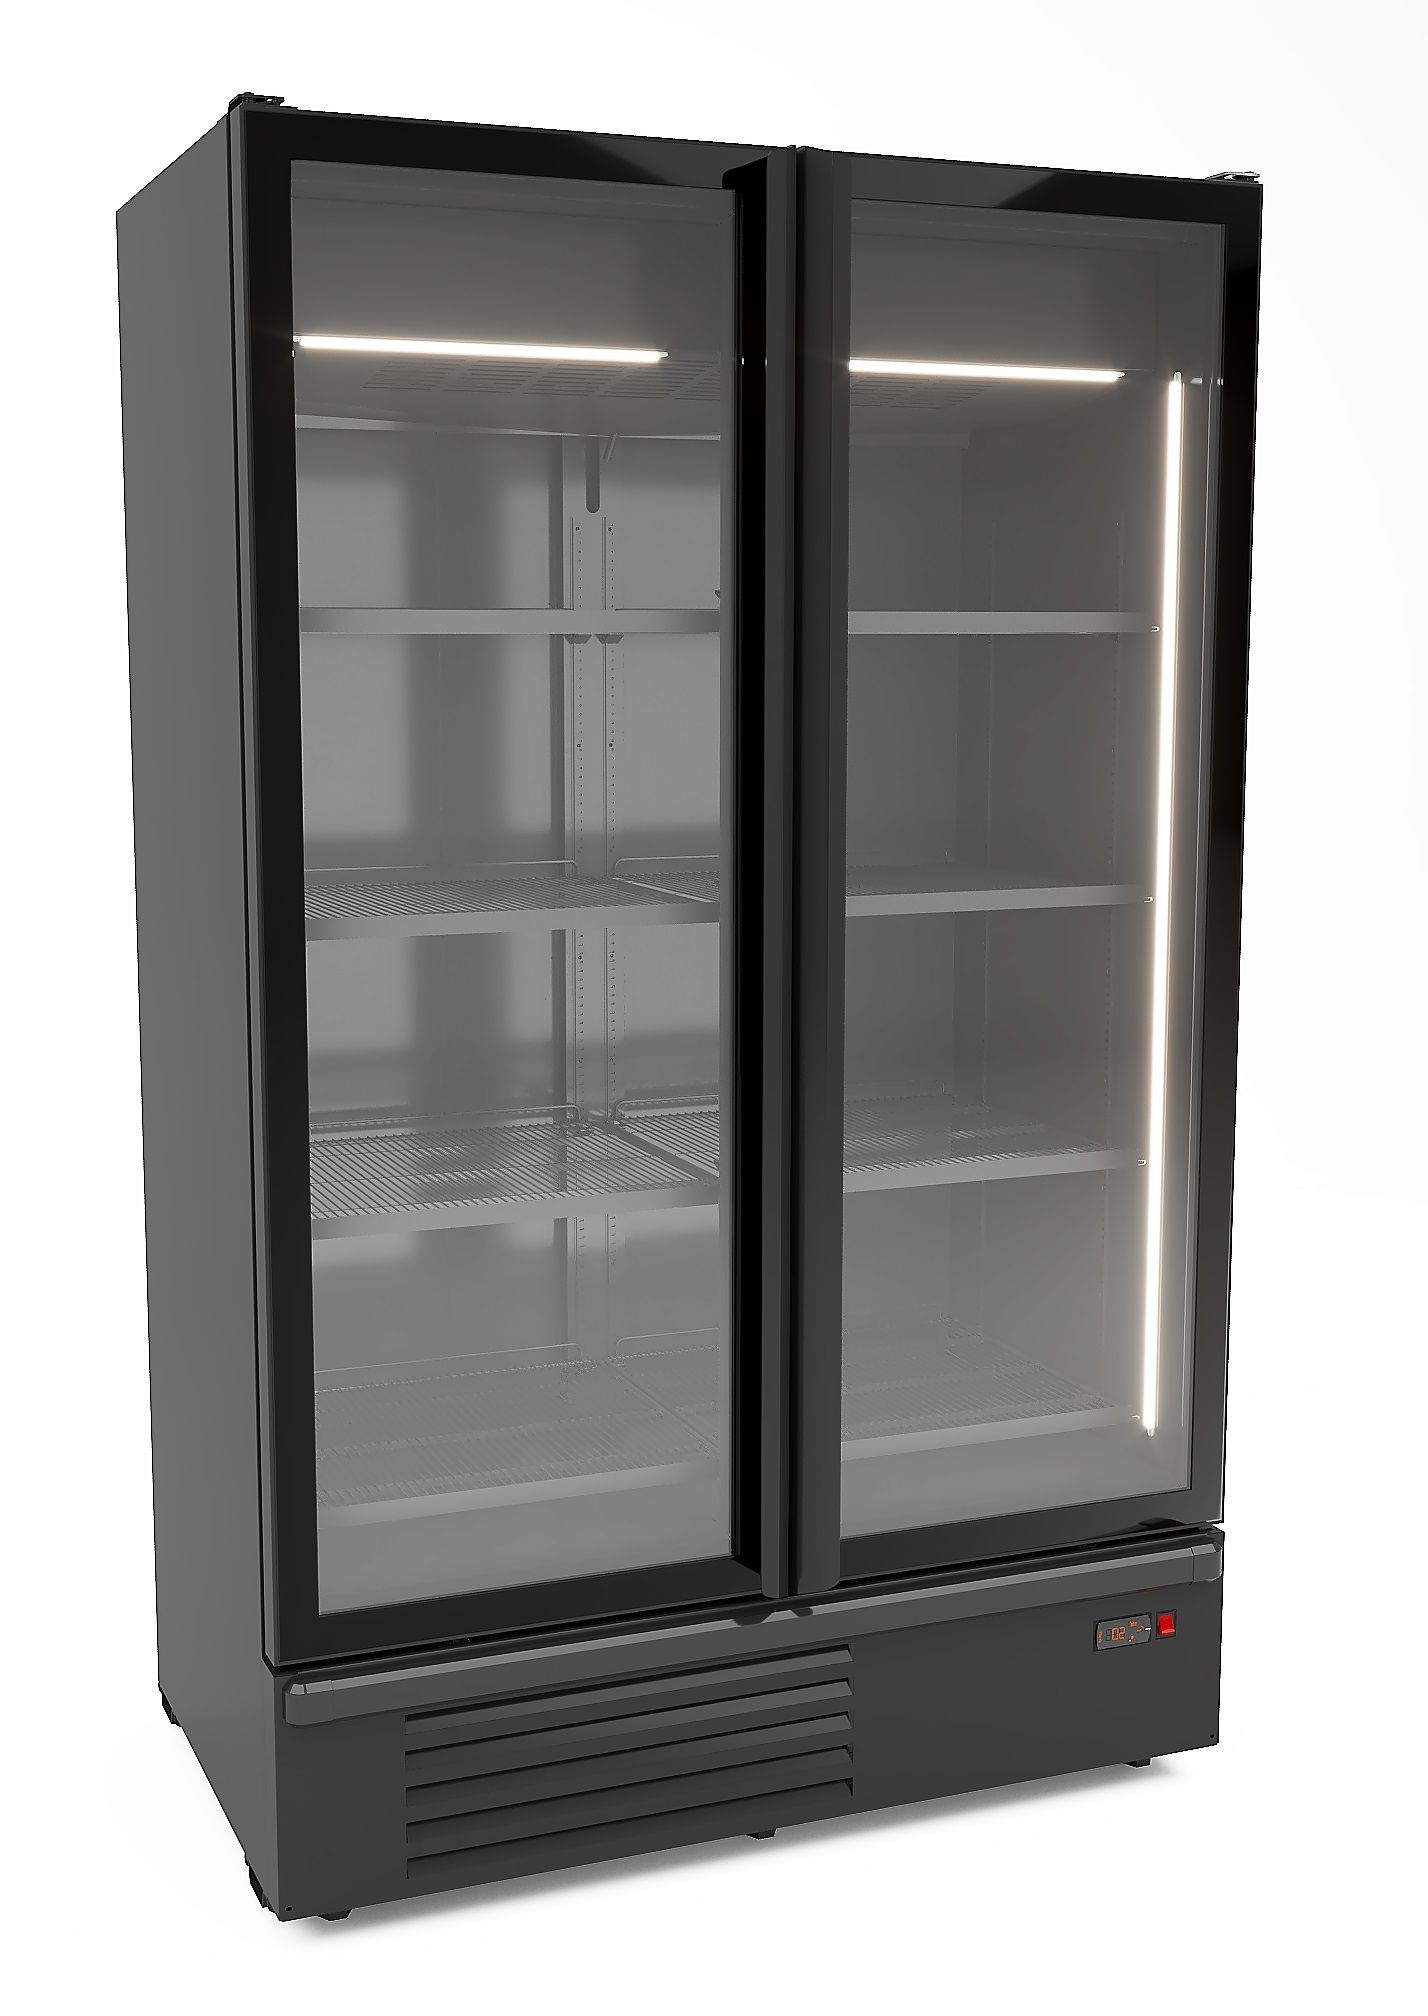 CombiSteel Refrigerator 2 Glass Doors Black 1200L